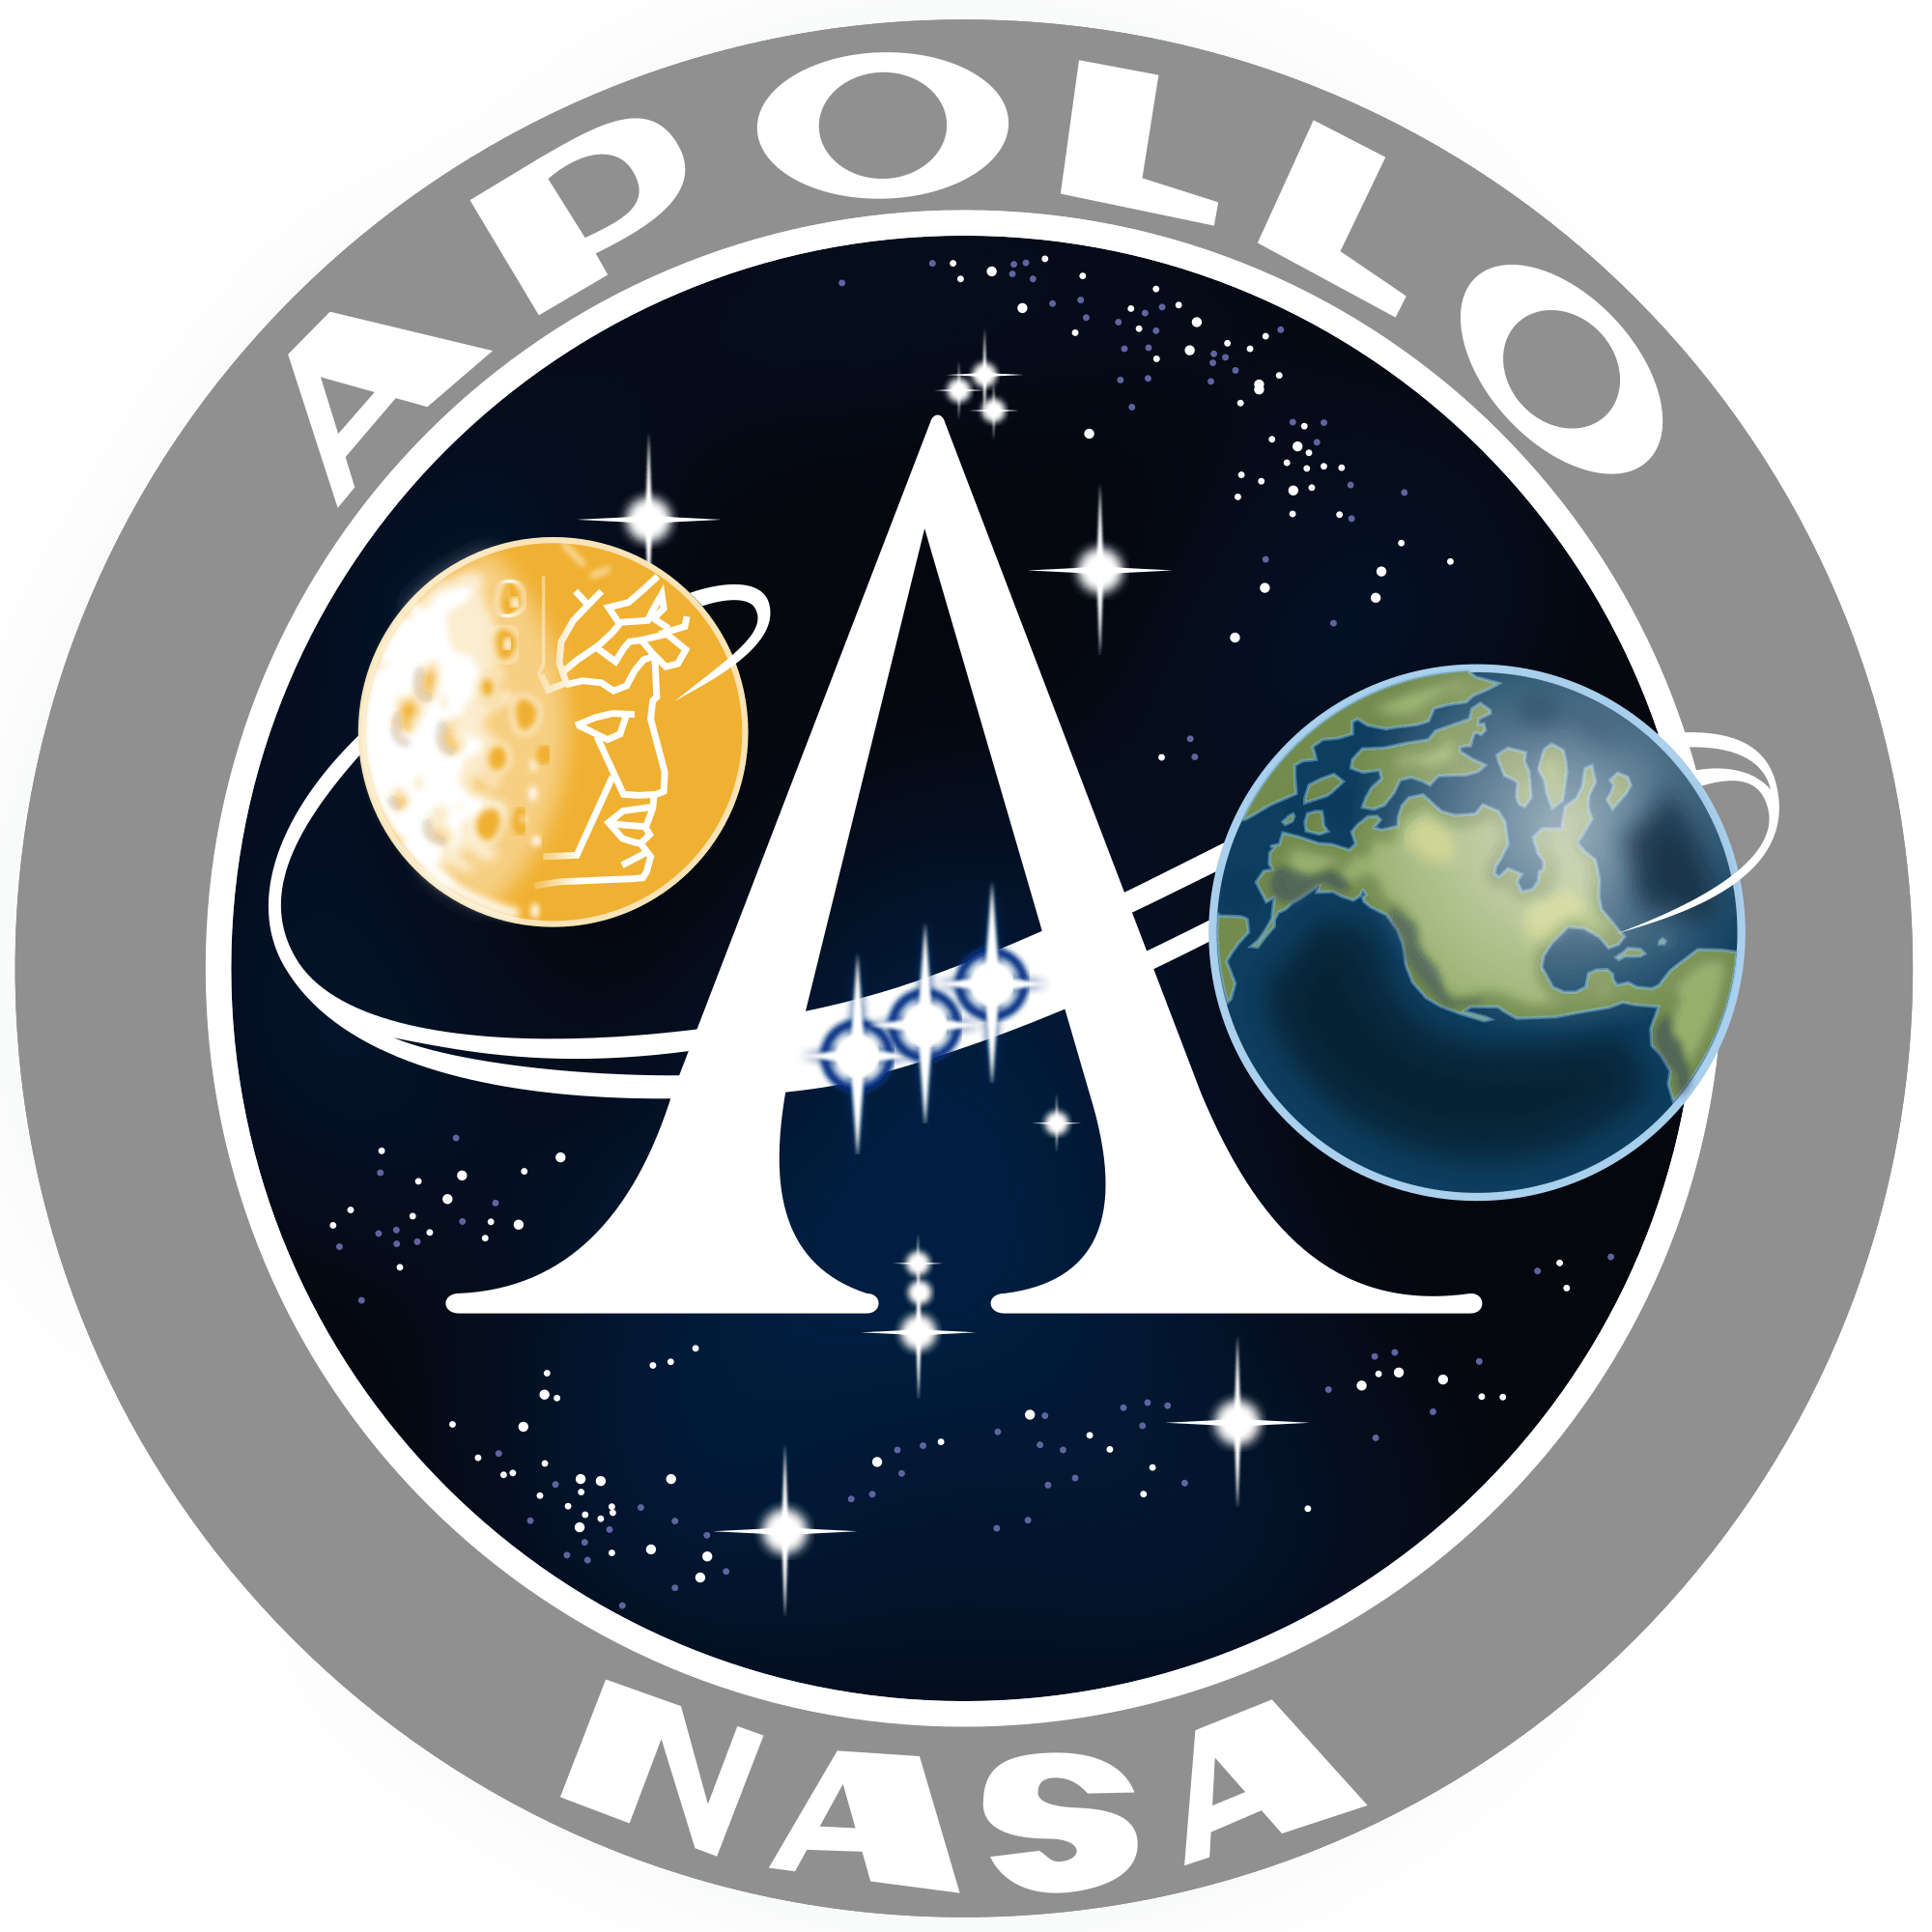 NASA Rocket Logo - Apollo program